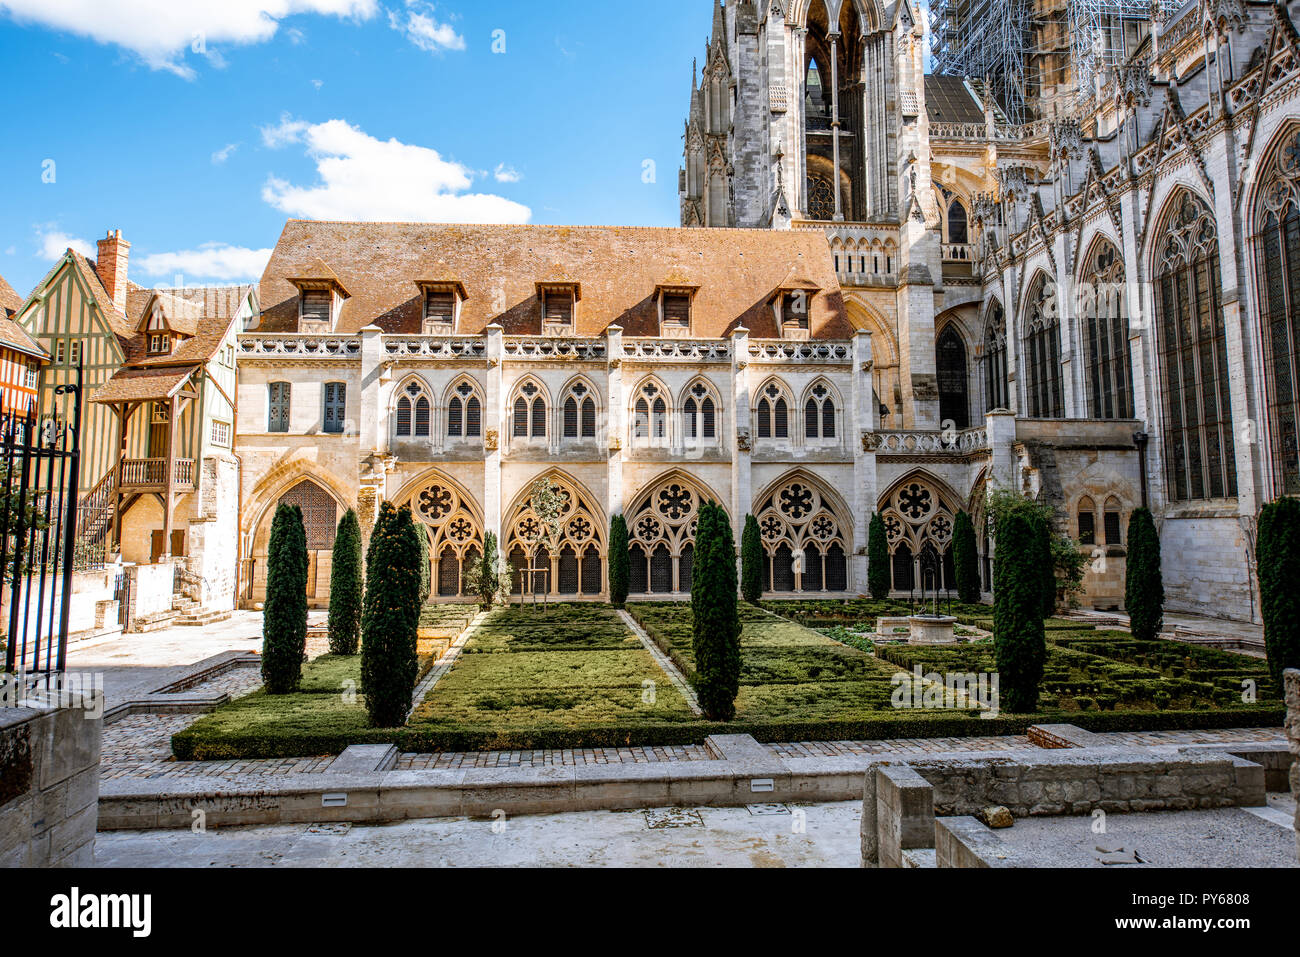 Hinterhof der berühmten Kathedrale von Rouen in Rouen, der acpital der Normandie in Frankreich Stockfoto